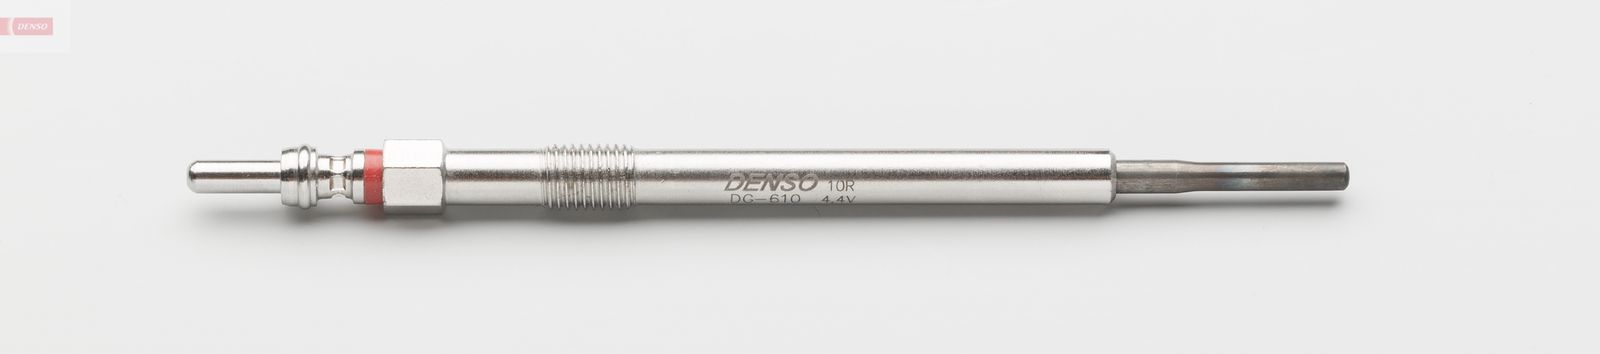 Žhavící svíčka DENSO DG-610